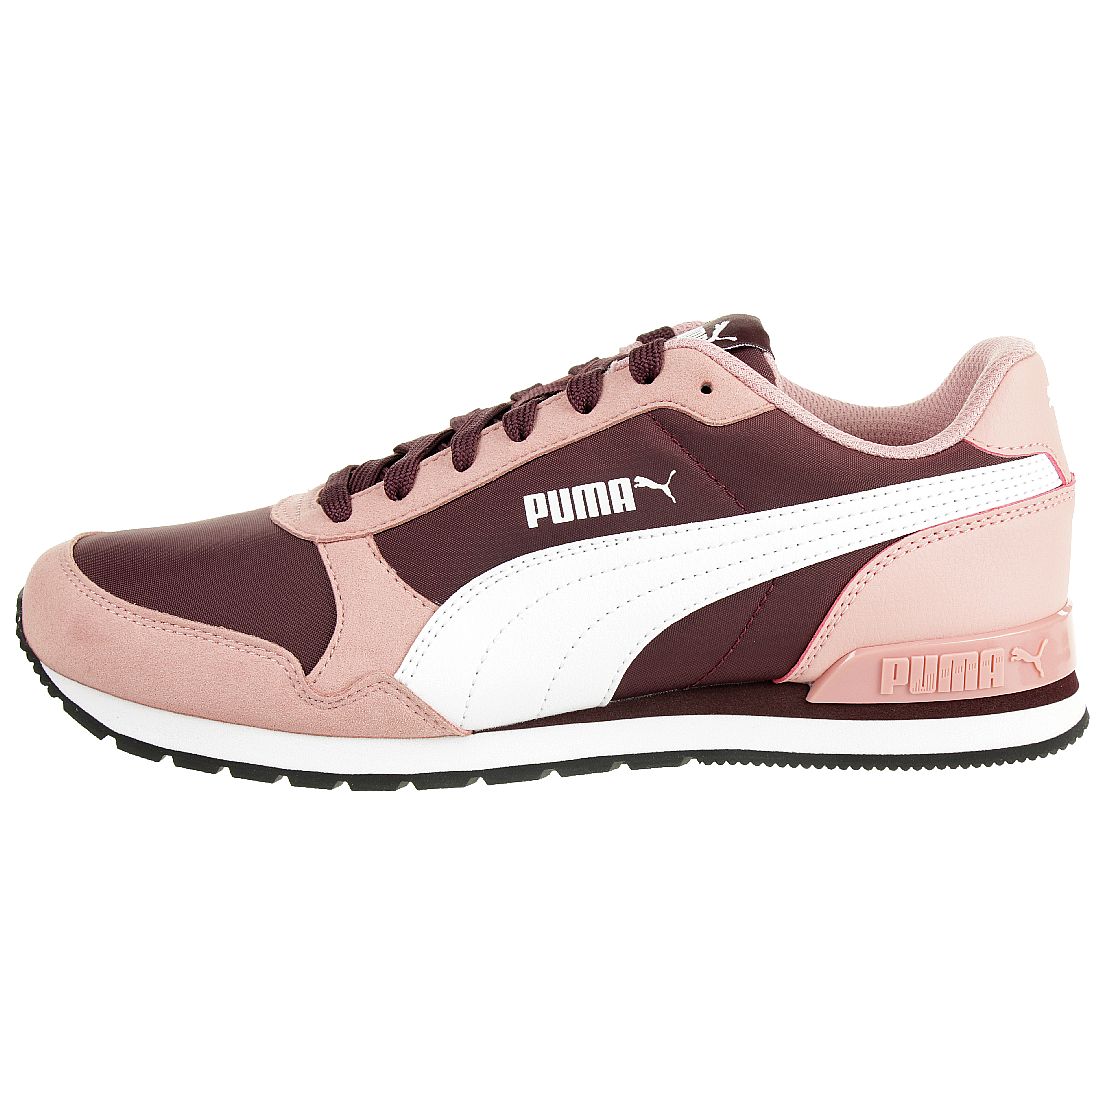 Puma ST Runner v2 NL Sneaker Damen rosa  365278 22